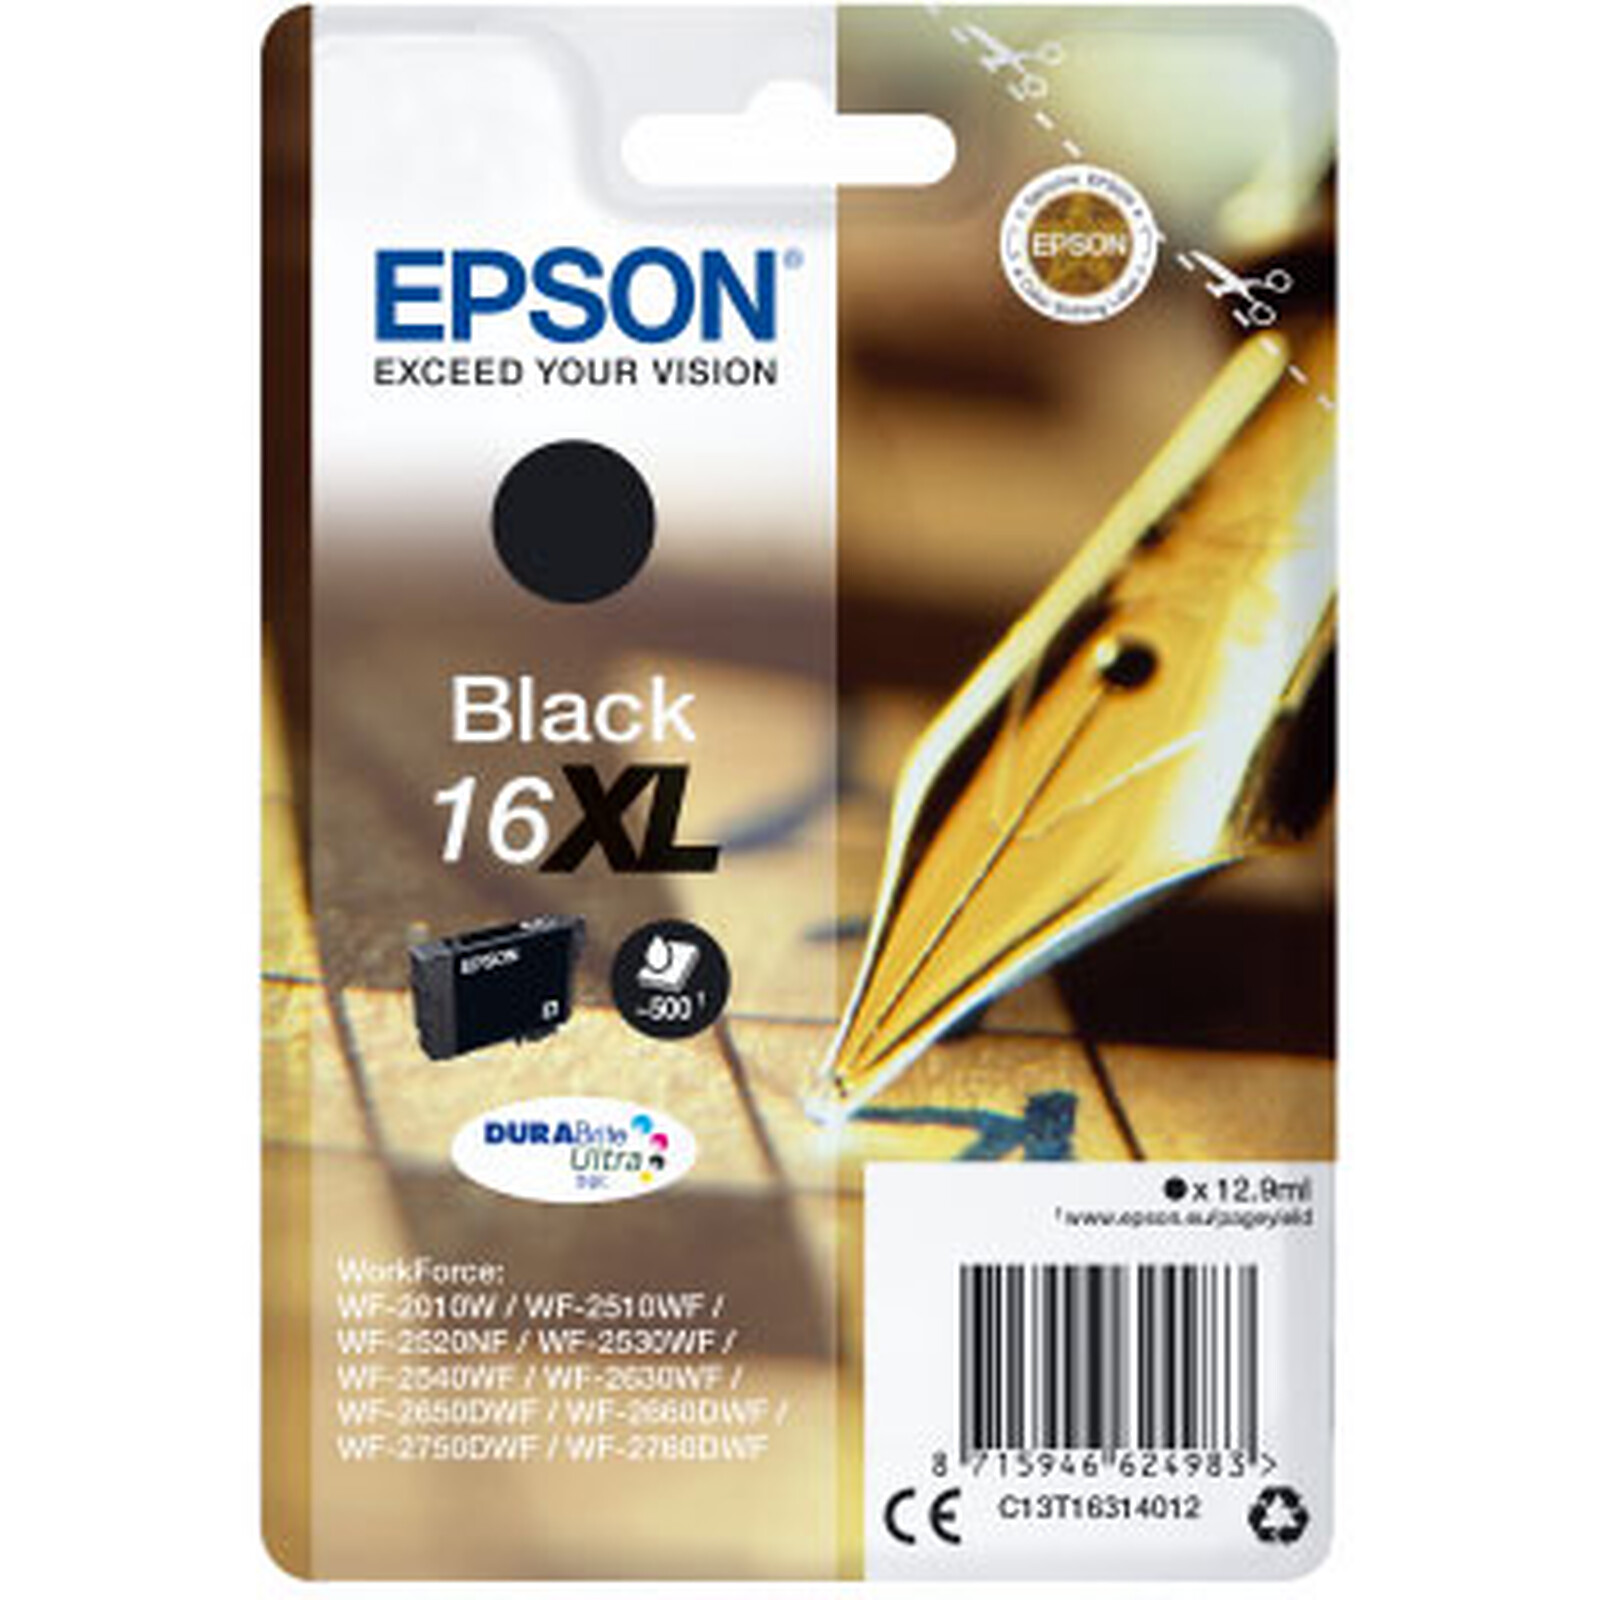 Epson 604XL Pack 5 Cartouches Compatibles Grande Capacité